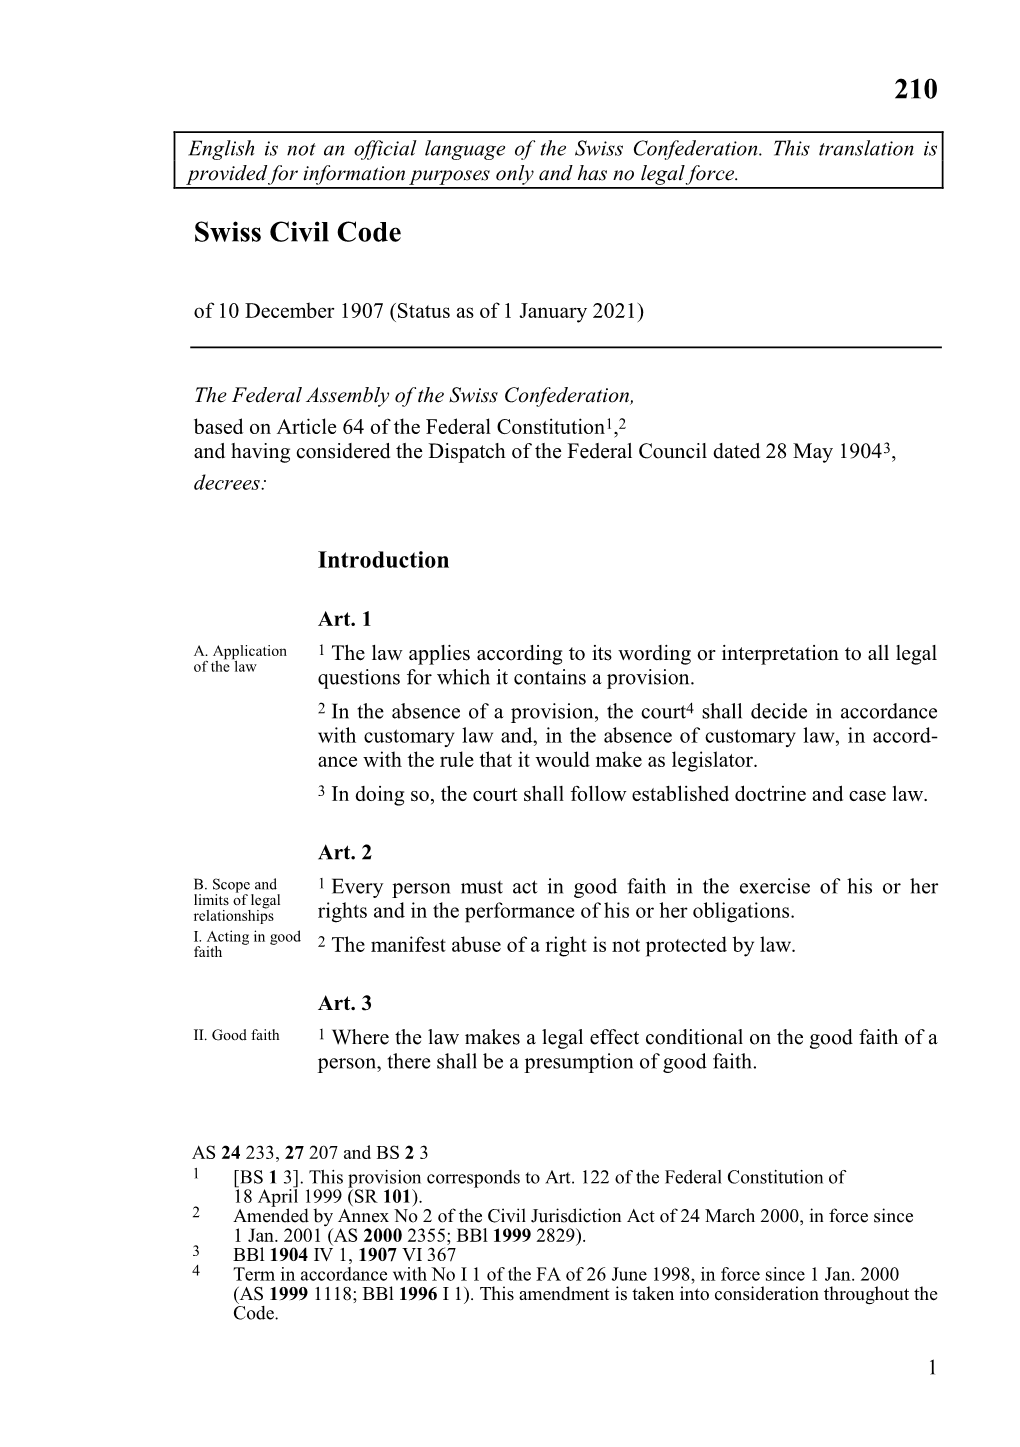 Swiss Civil Code of 10 December 1907 (Status As of 1 January 2021)